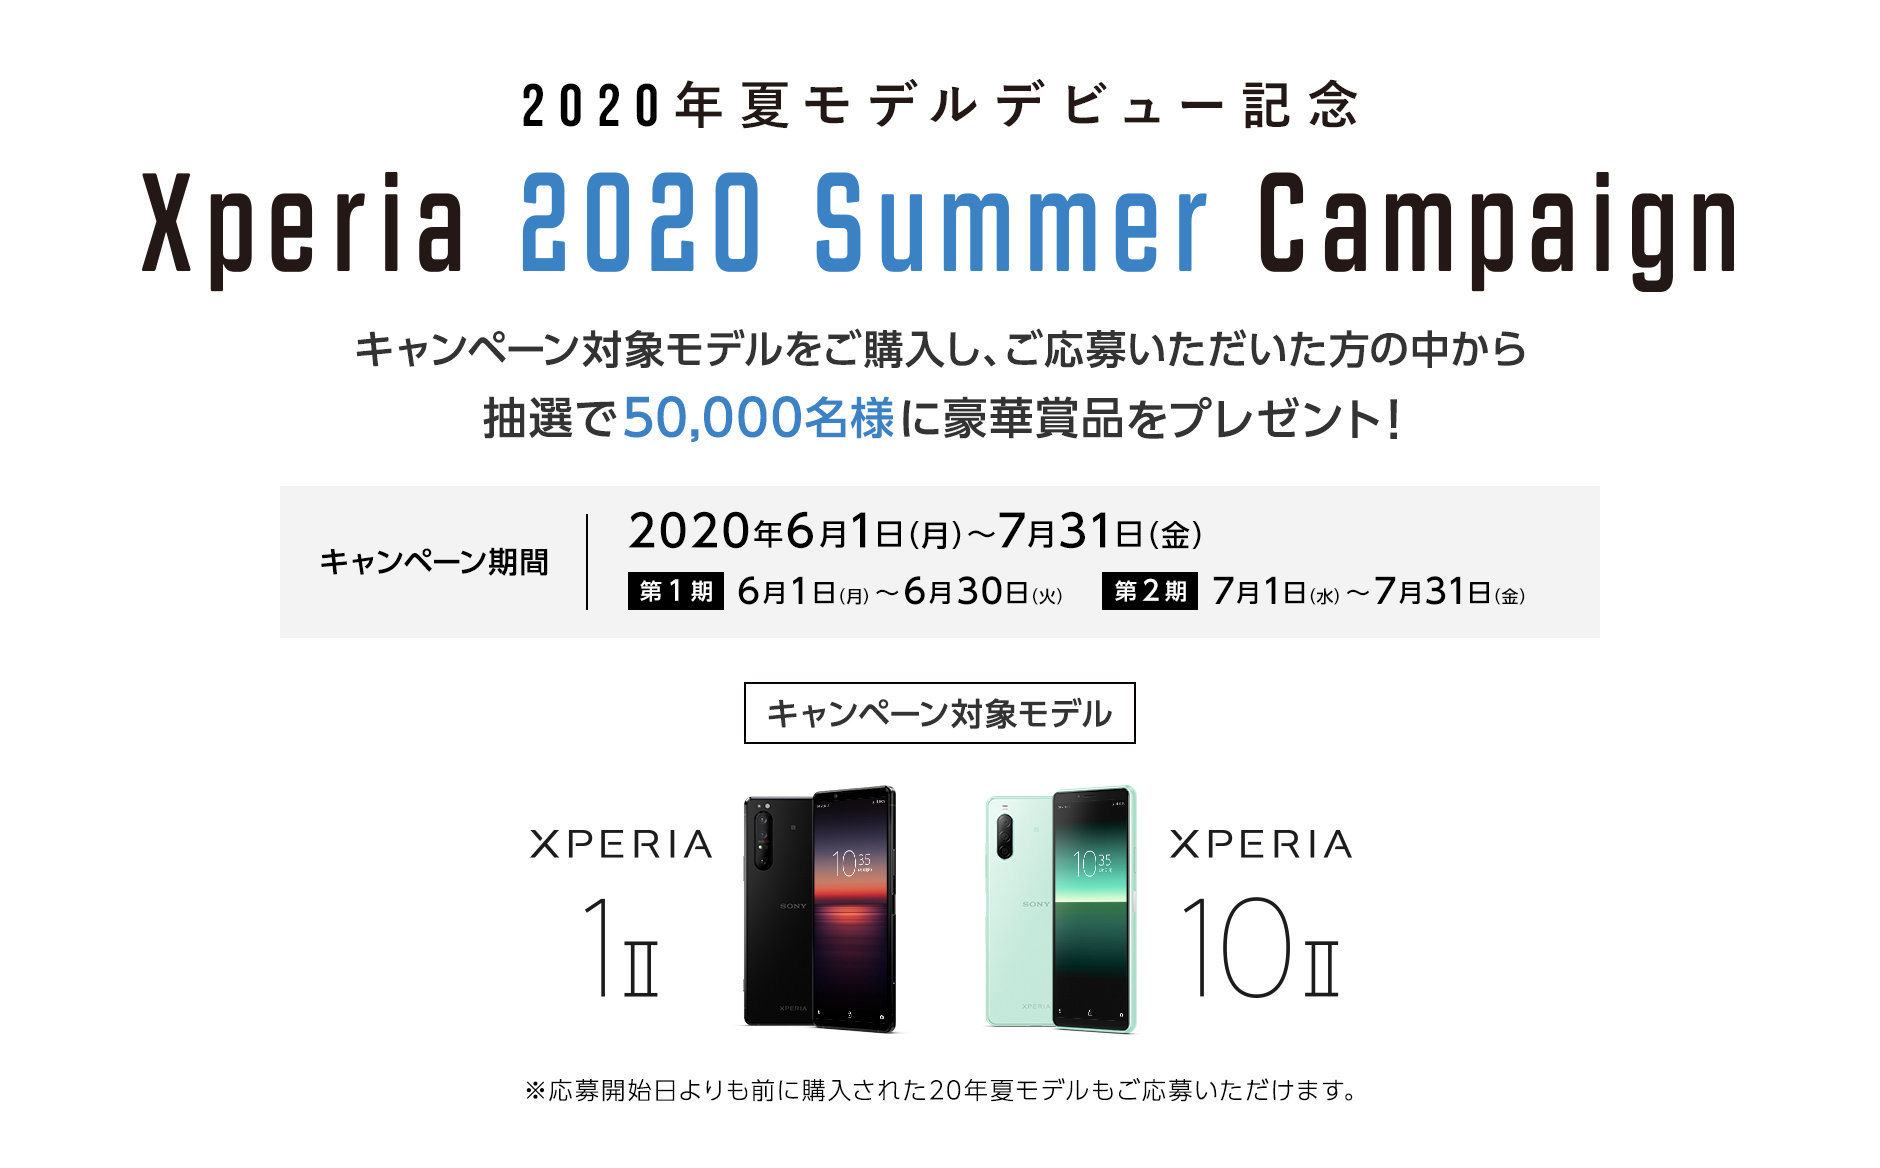 2020年夏モデルデビュー記念 Xperia 2020 Summer Campaign 人気アーティスト・ブランドとのコラボ記念Tシャツをはじめ、豪華賞品をプレゼント！ キャンペーン期間：2020年6月1日（月）〜7月31日（金）第1弾 6月1日（月）〜6月30日（火）第2弾 7月1日（水）〜7月31日（金）キャンペーン対象モデル XPERIA 1 Ⅱ XPERIA 10 Ⅱ ※応募開始日よりも前に購入された20年夏モデルもご応募いただけます。